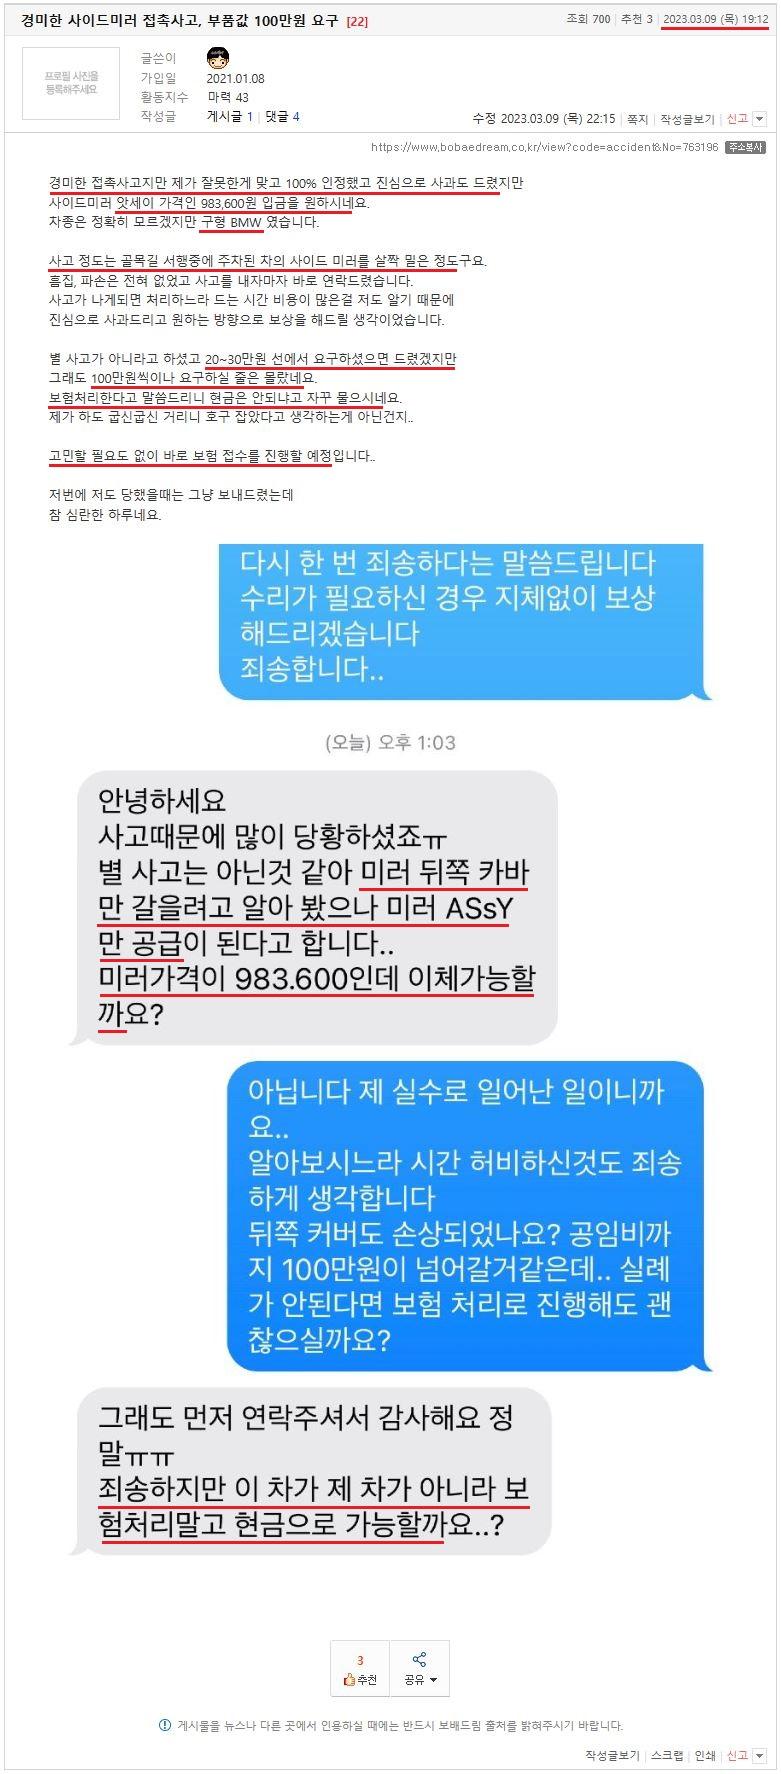 경미한 사이드미러 접촉사고, 부품값 100만원 요구 (1).JPG